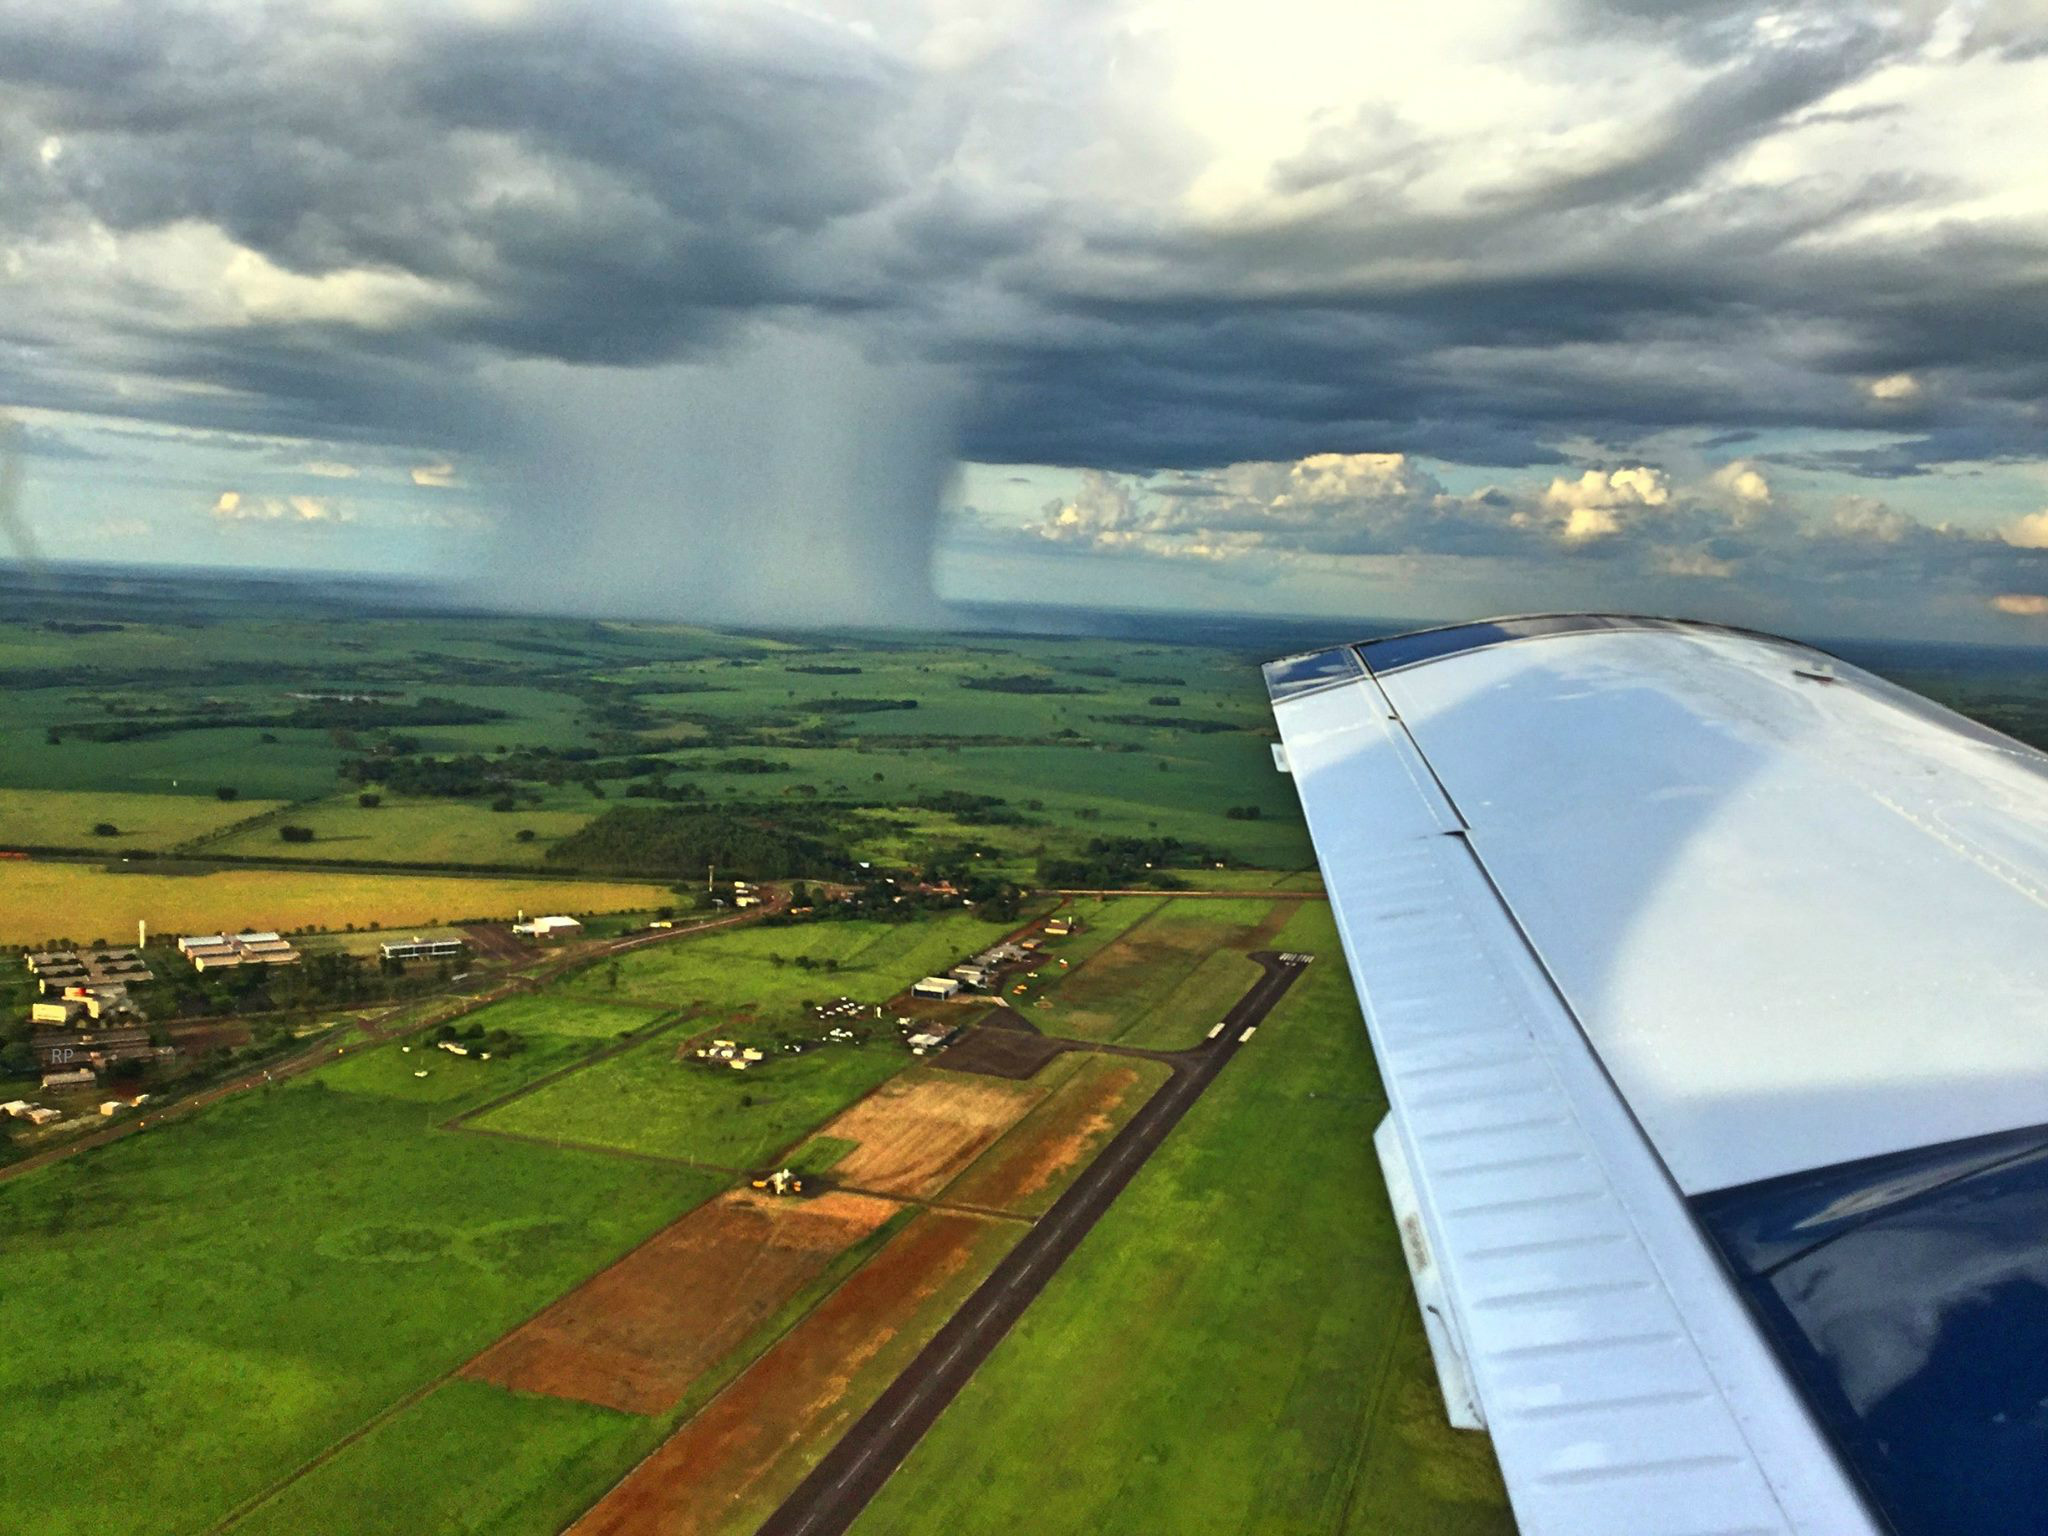 Imagem captada do aeroporto de Dourados no domingo mostra chuva isoladaFoto: Aviação regional de Dourados